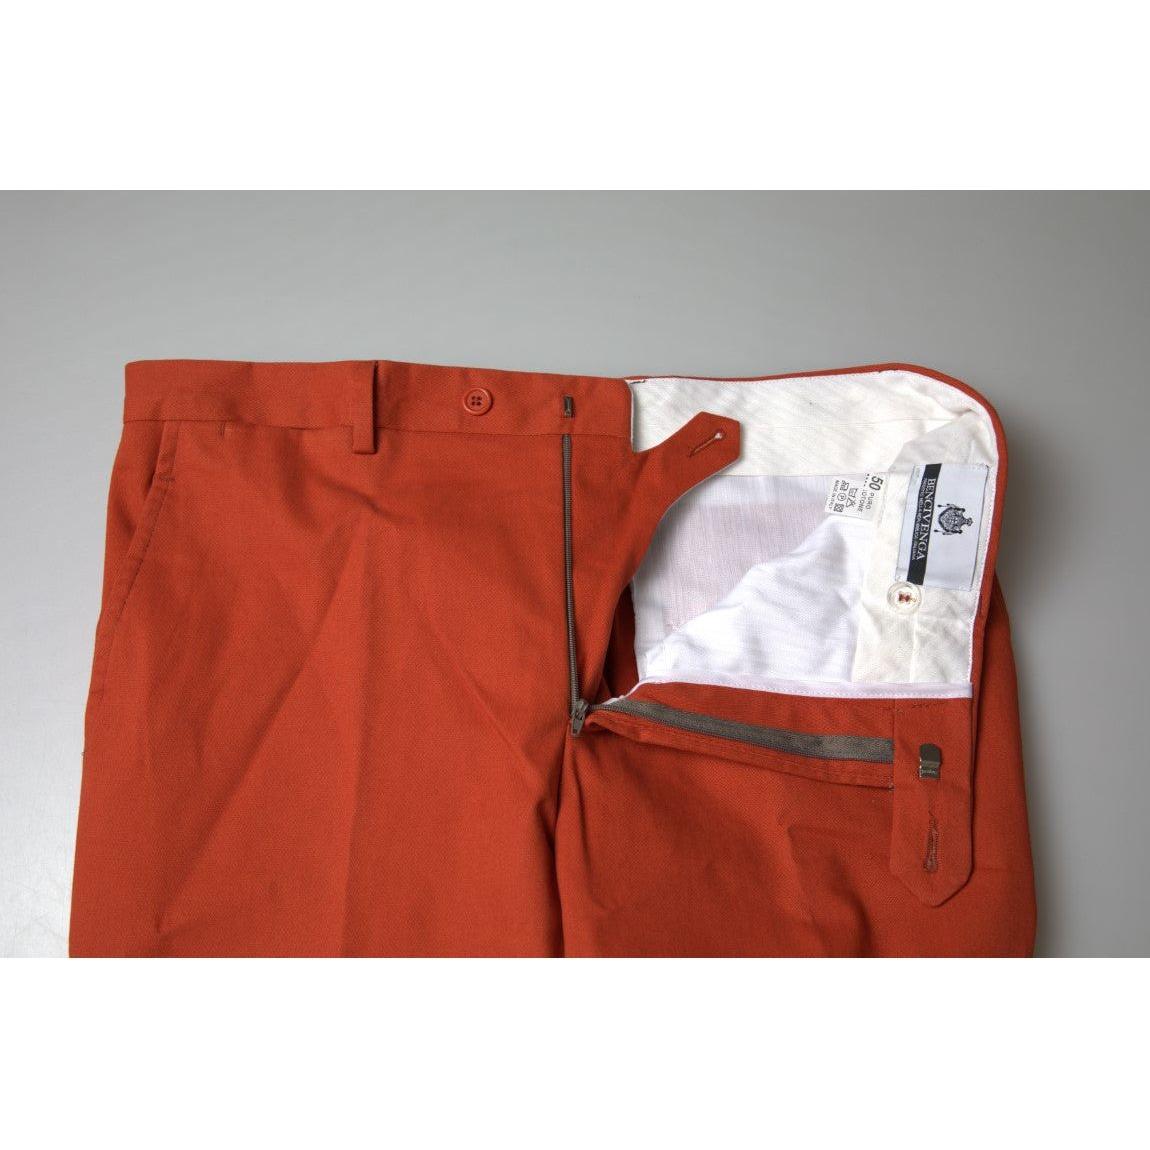 BENCIVENGA Elegant Orange Pure Cotton Pants orange-straight-fit-men-formal-trousers-pants 465A4266-Medium-064e31e4-f09.jpg